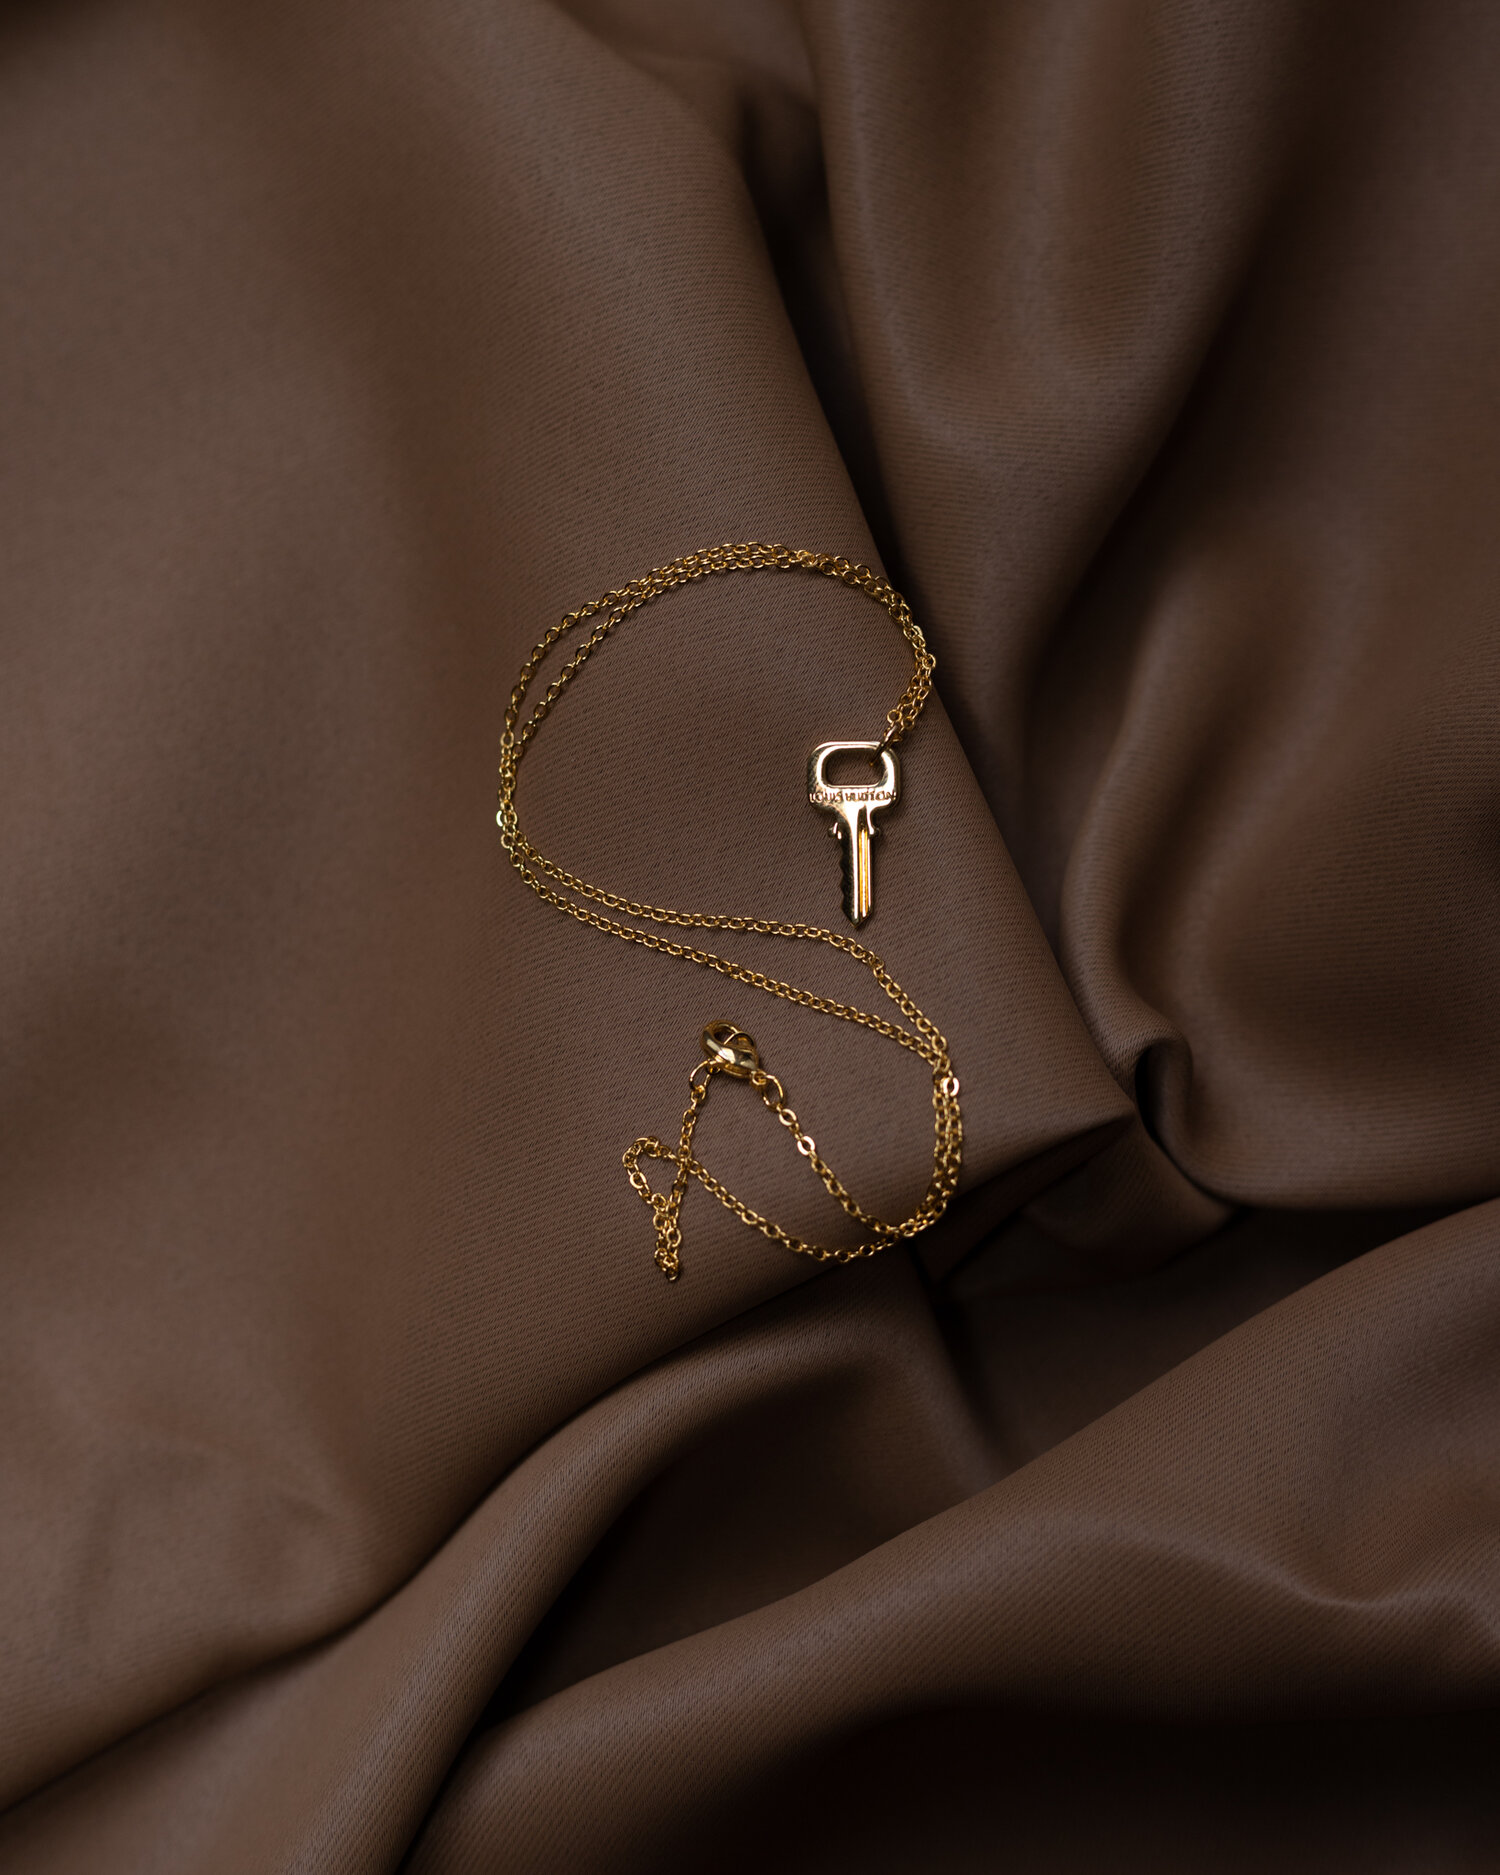 Louis Vuitton key necklace – Revised